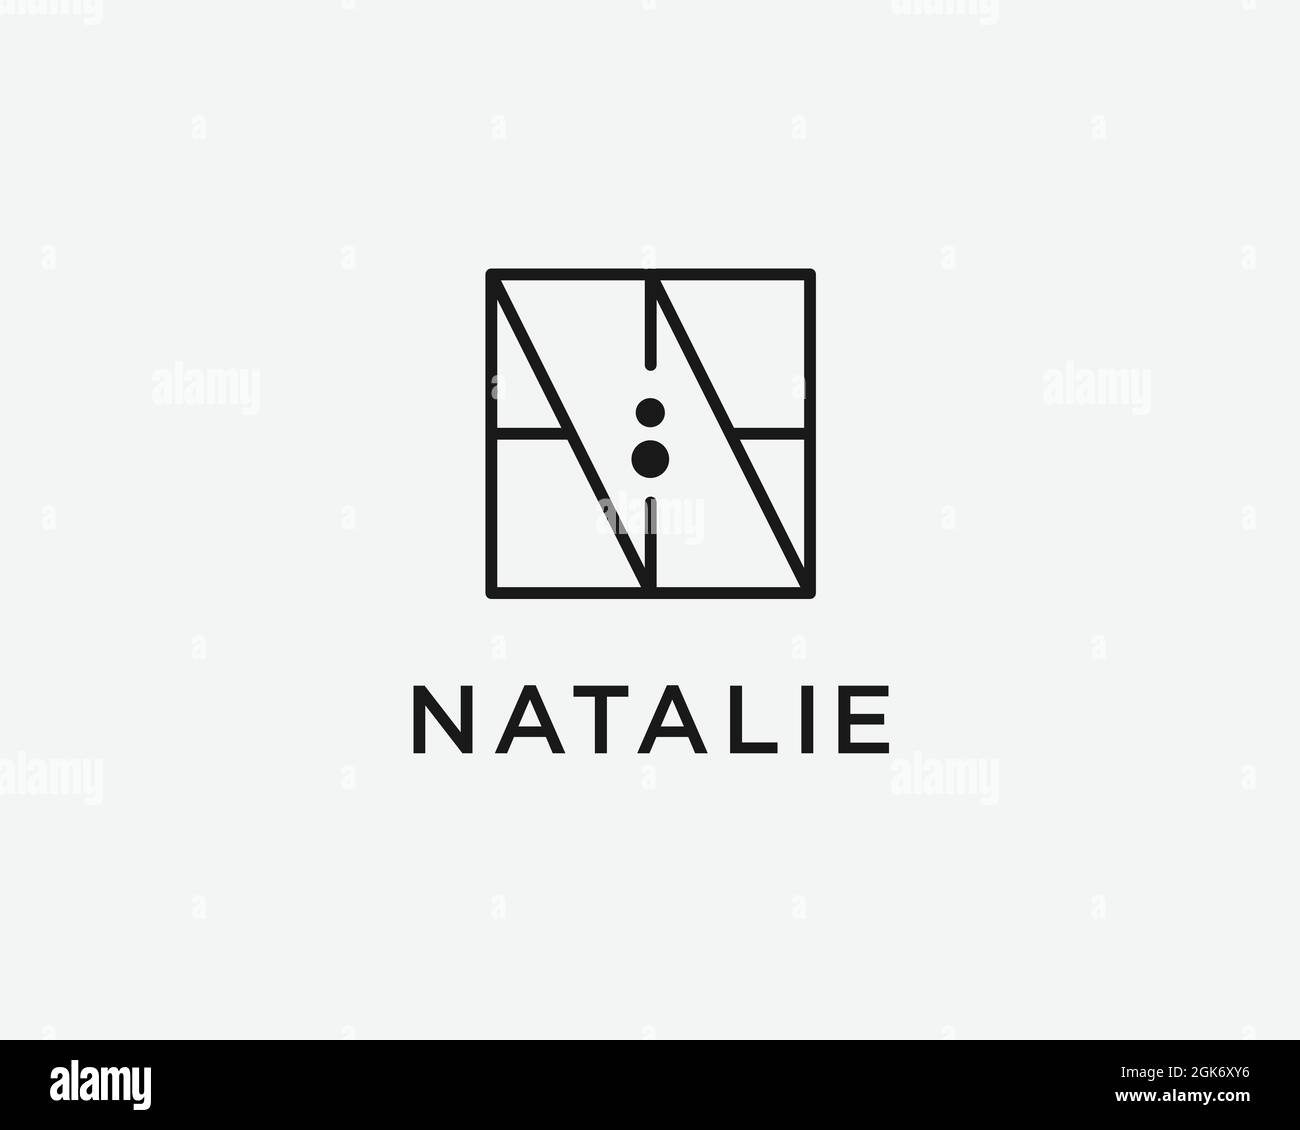 logo name Natalie usable logo design for private logo, business name card web icon, social media icon Stock Vector